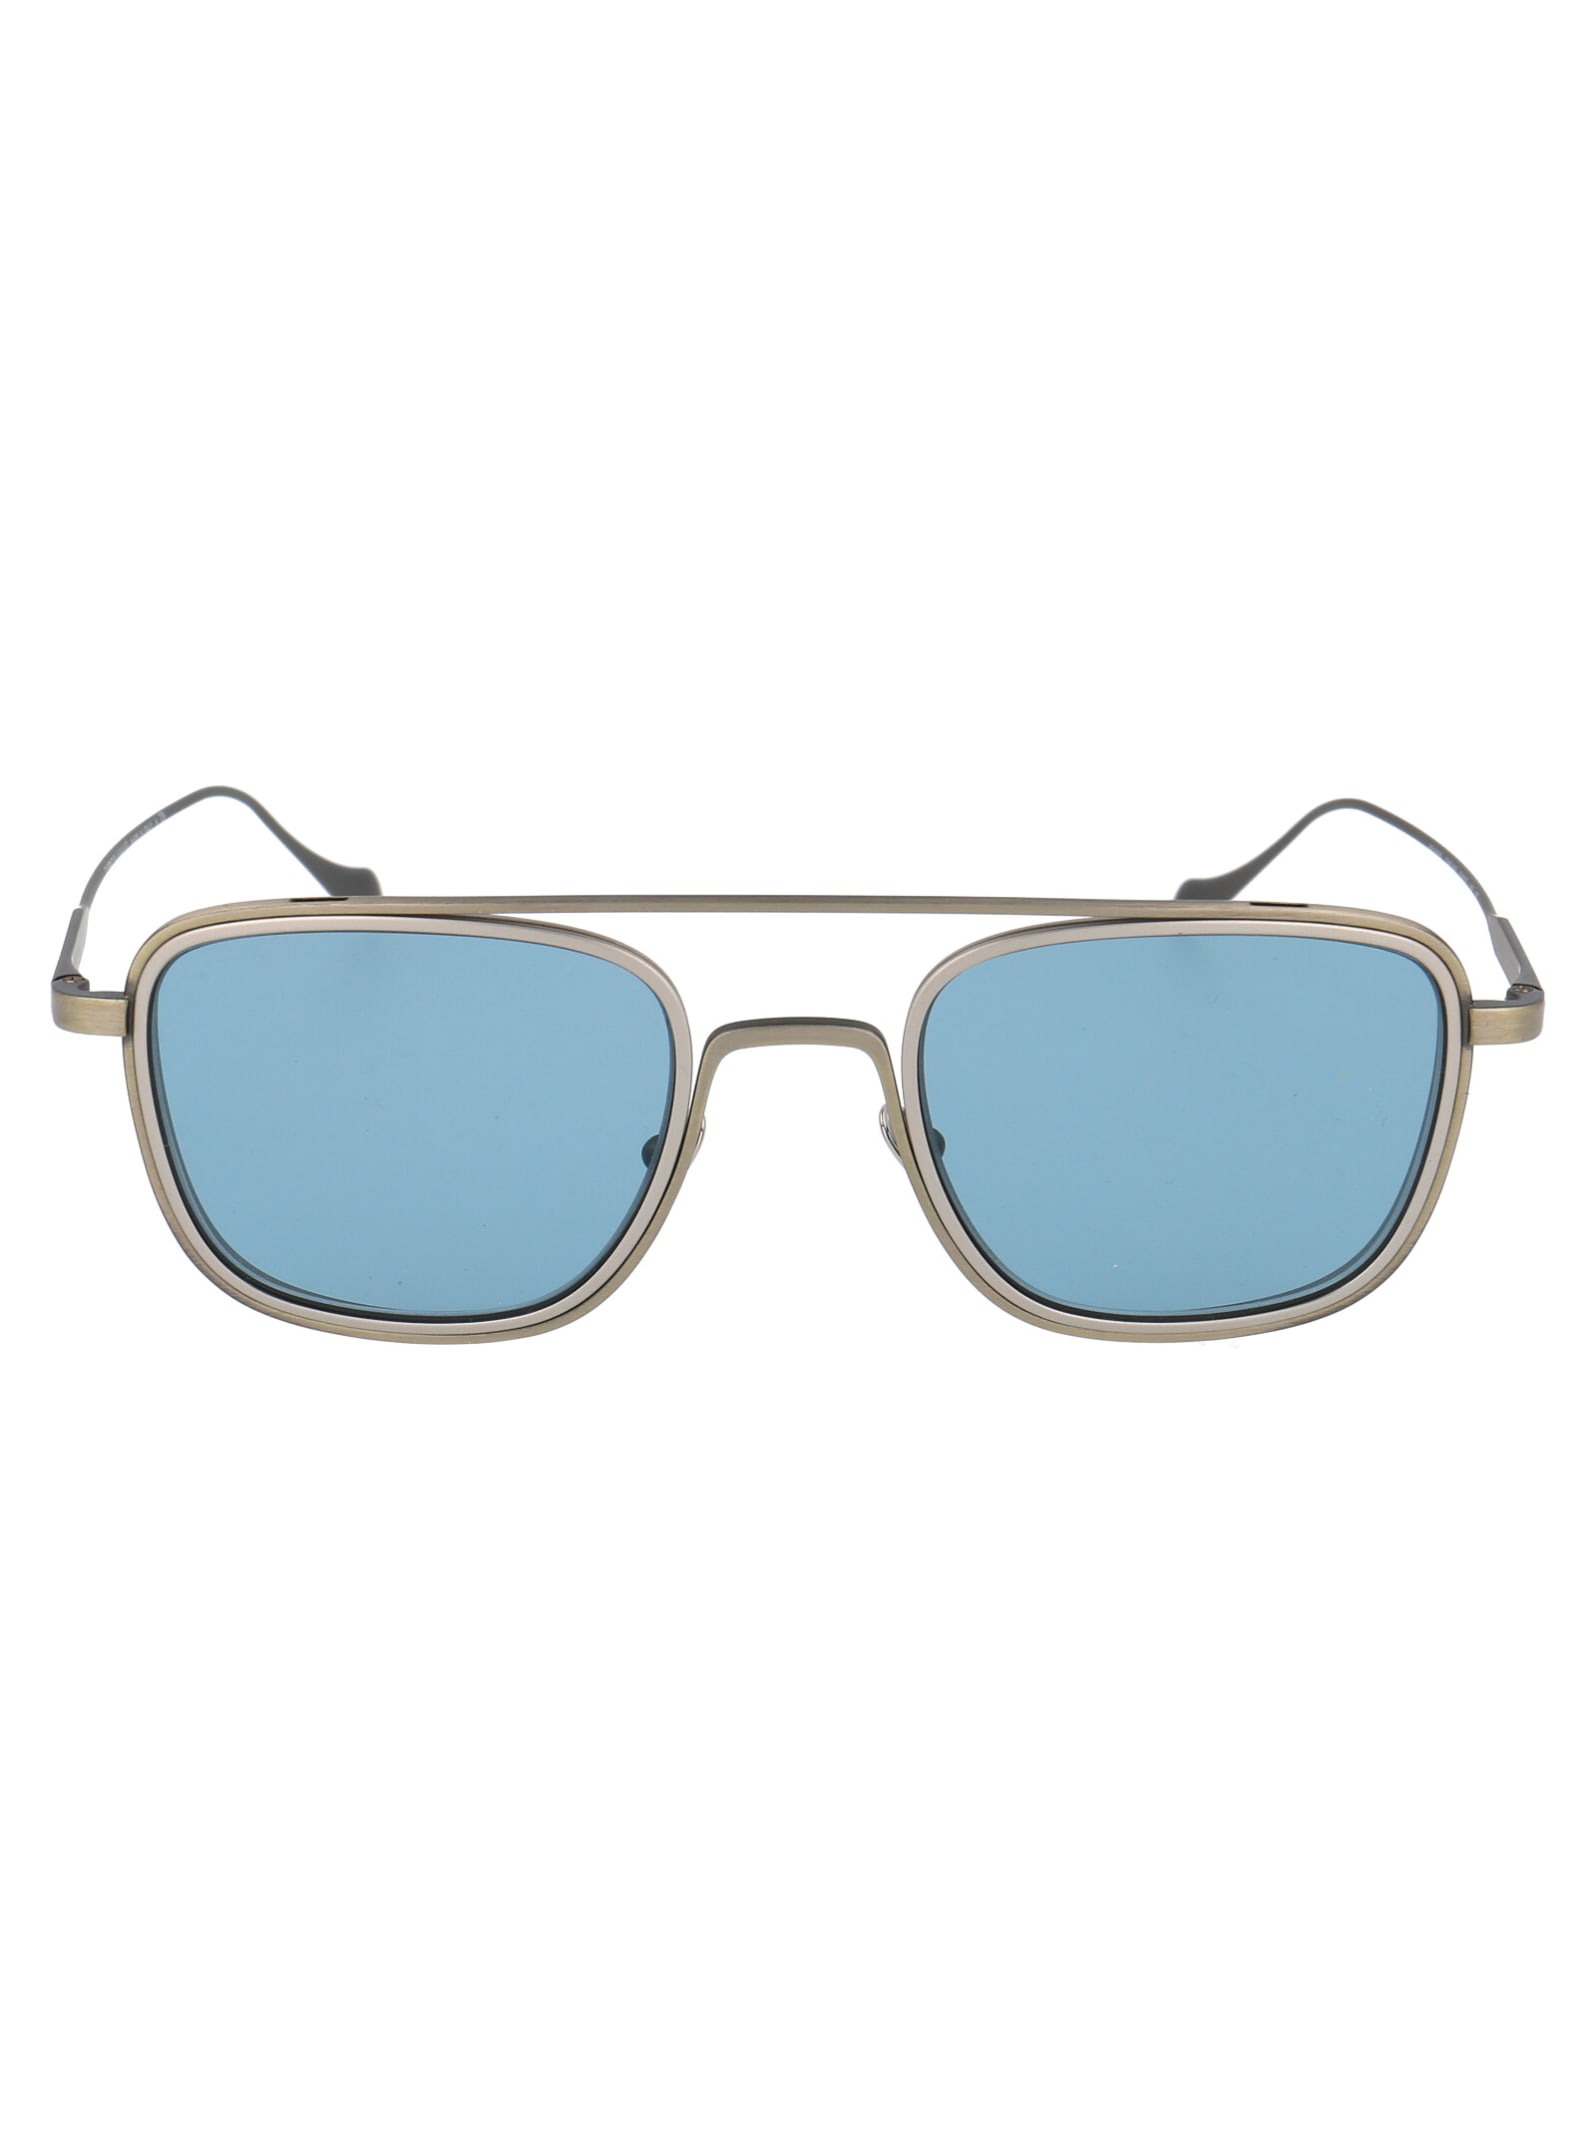 Giorgio Armani 0ar6086 Sunglasses